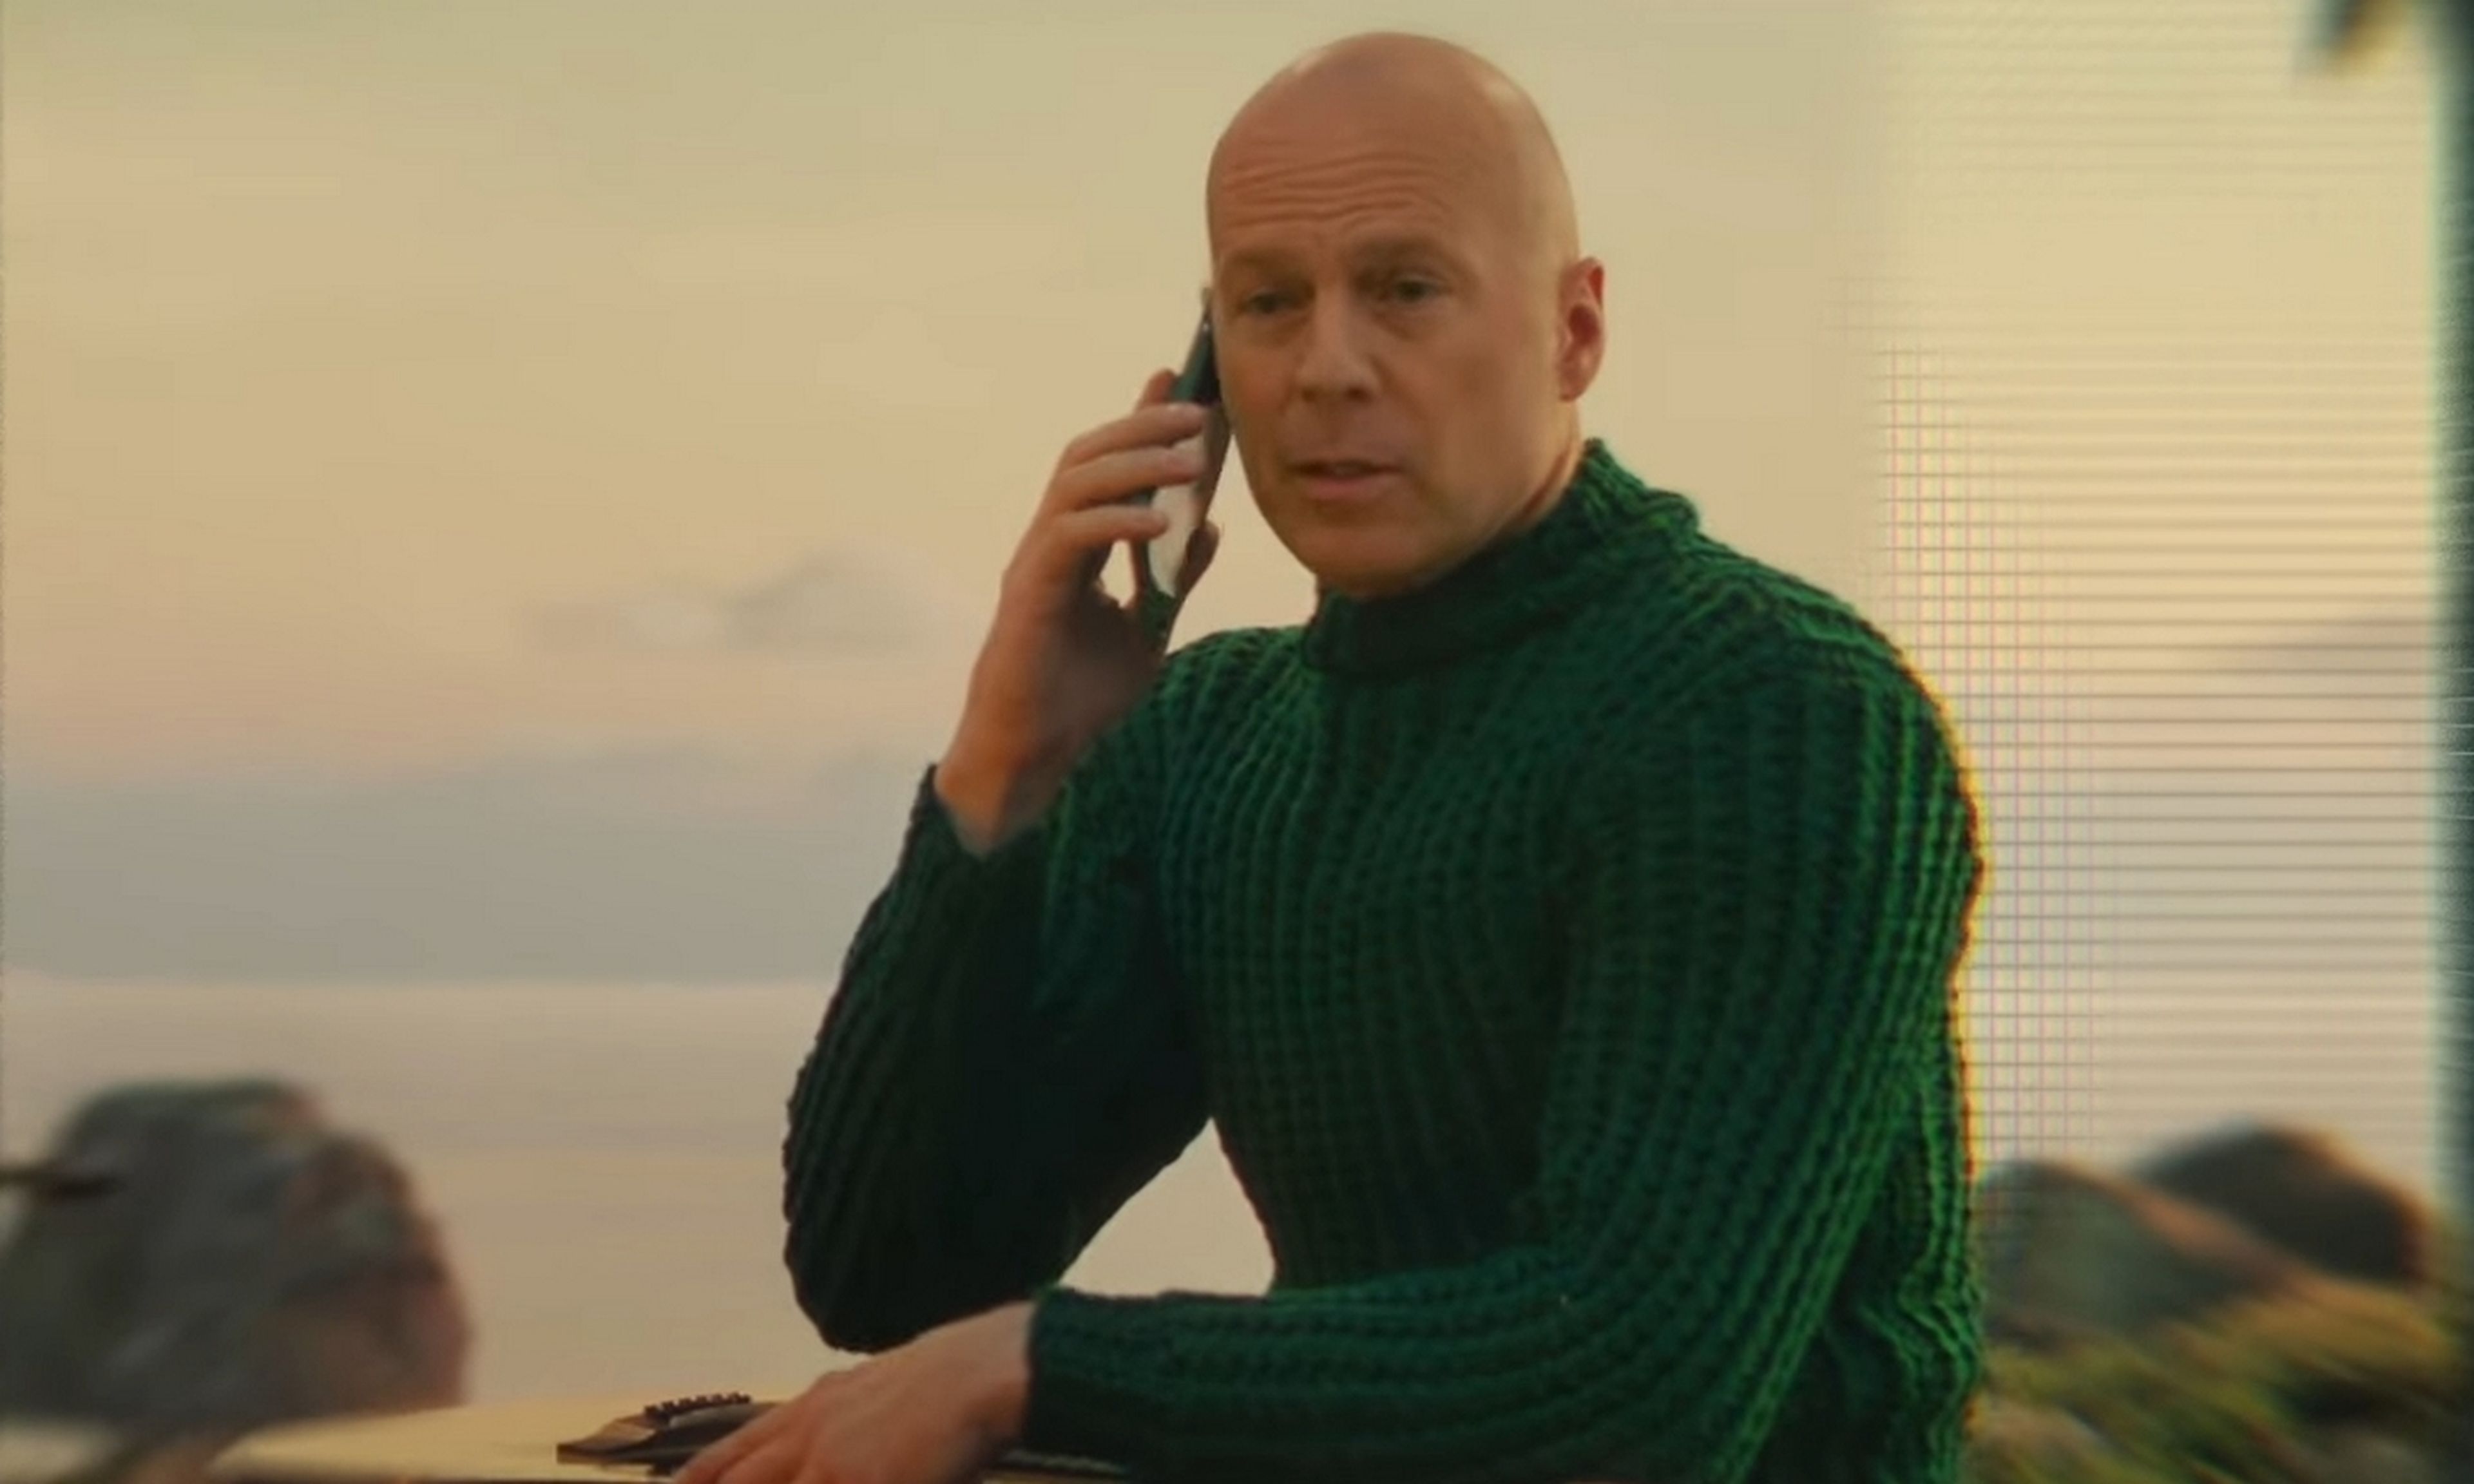 Seguirás viendo a Bruce Willis en el cine, aunque ya no sea él: ha vendido sus derechos a una compañía de deepfakes